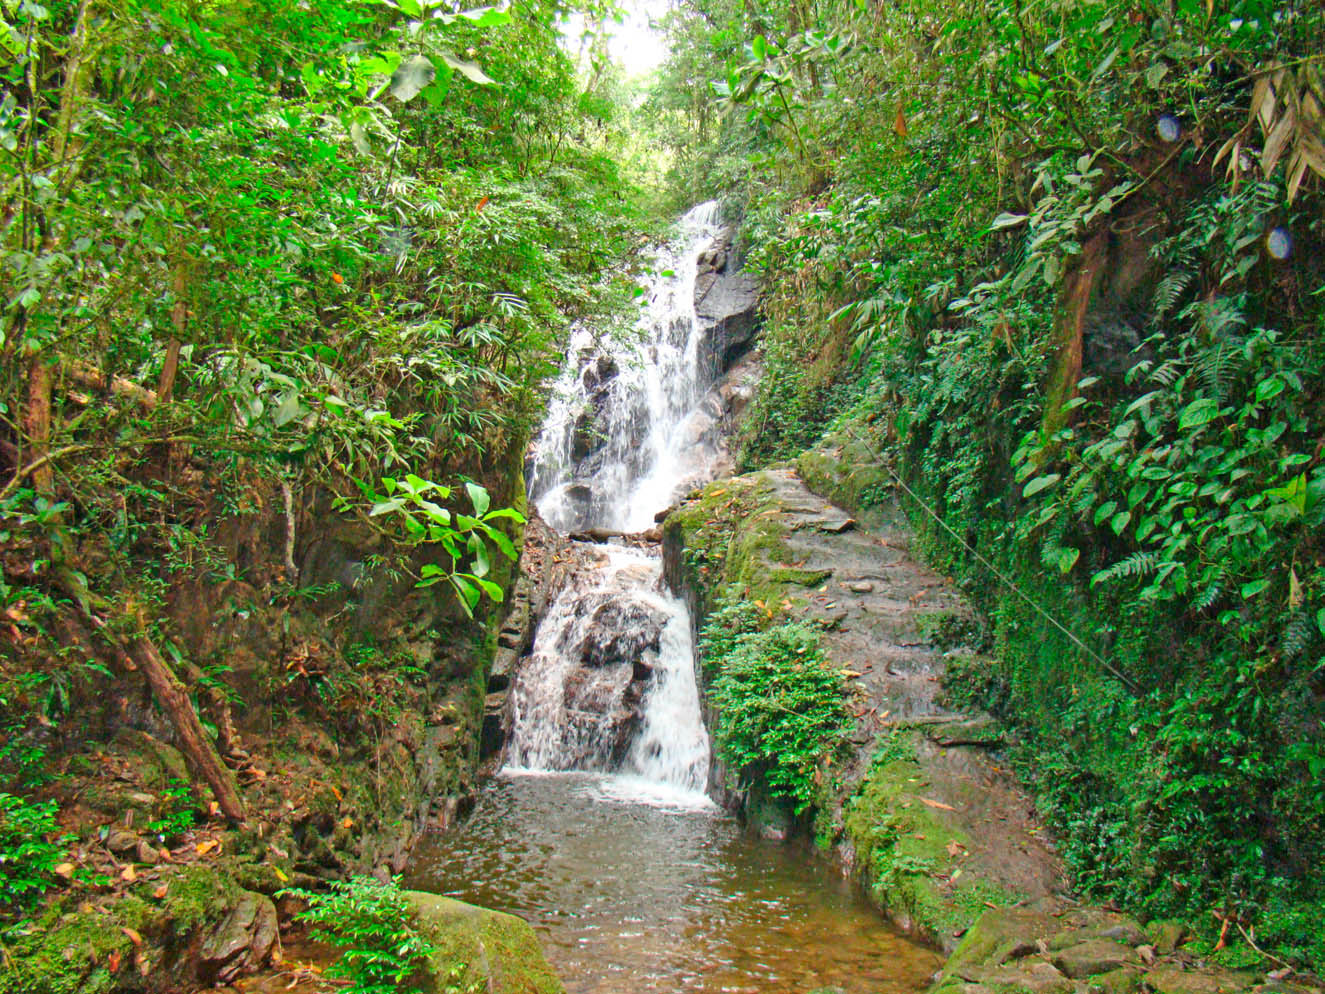 Turismo - Cachoeiras do Santuário - Pousada Visconde de Mauá - Visconde de Mauá - RJ